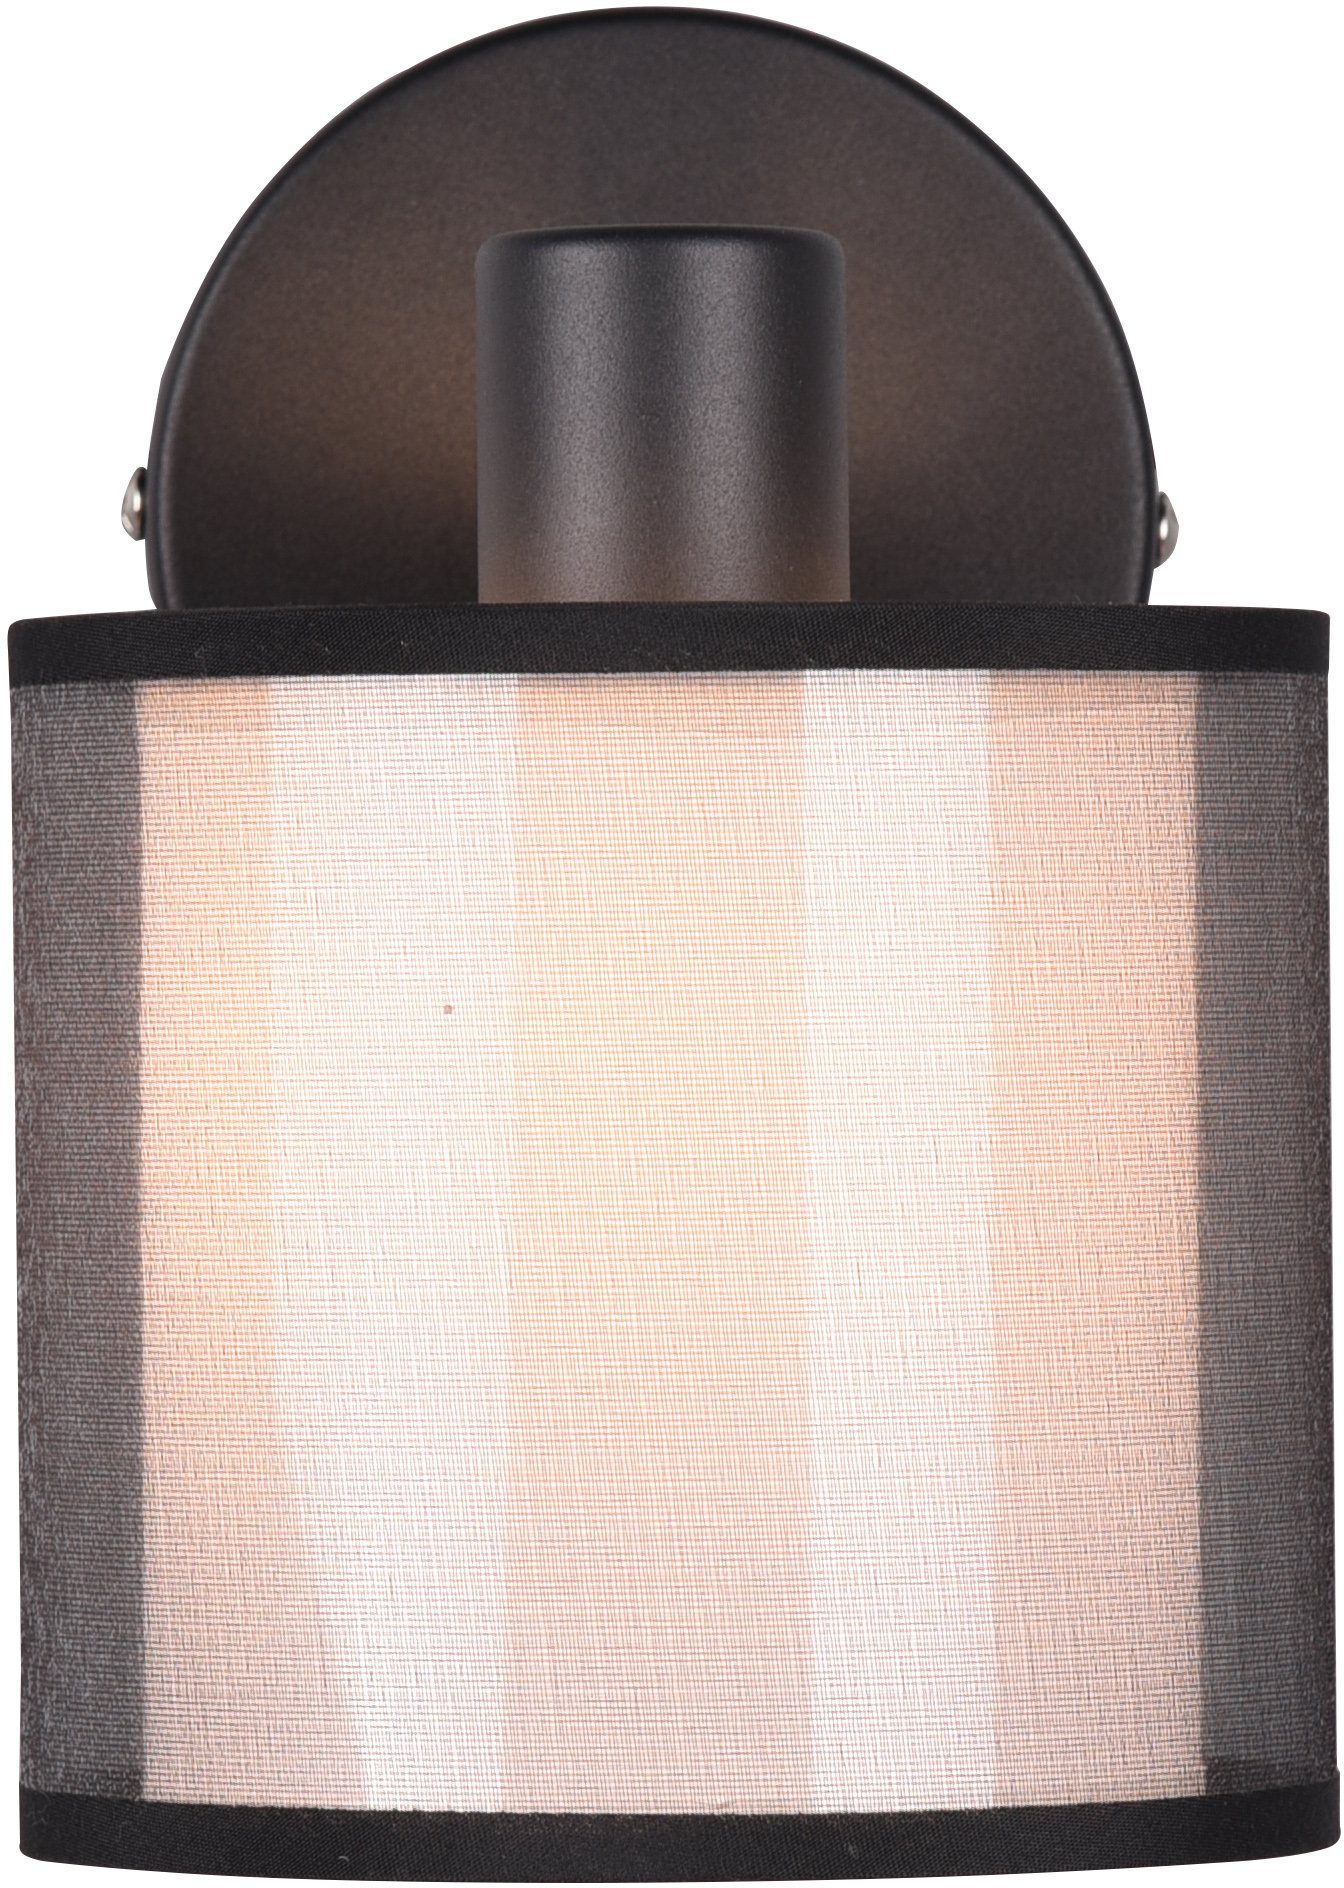 Textil, Spot Organza-Schirm Doppelschirm wechselbar, 1-flammig transparenter Liotta, Places Deckenstrahler of Leuchtmittel Style mit